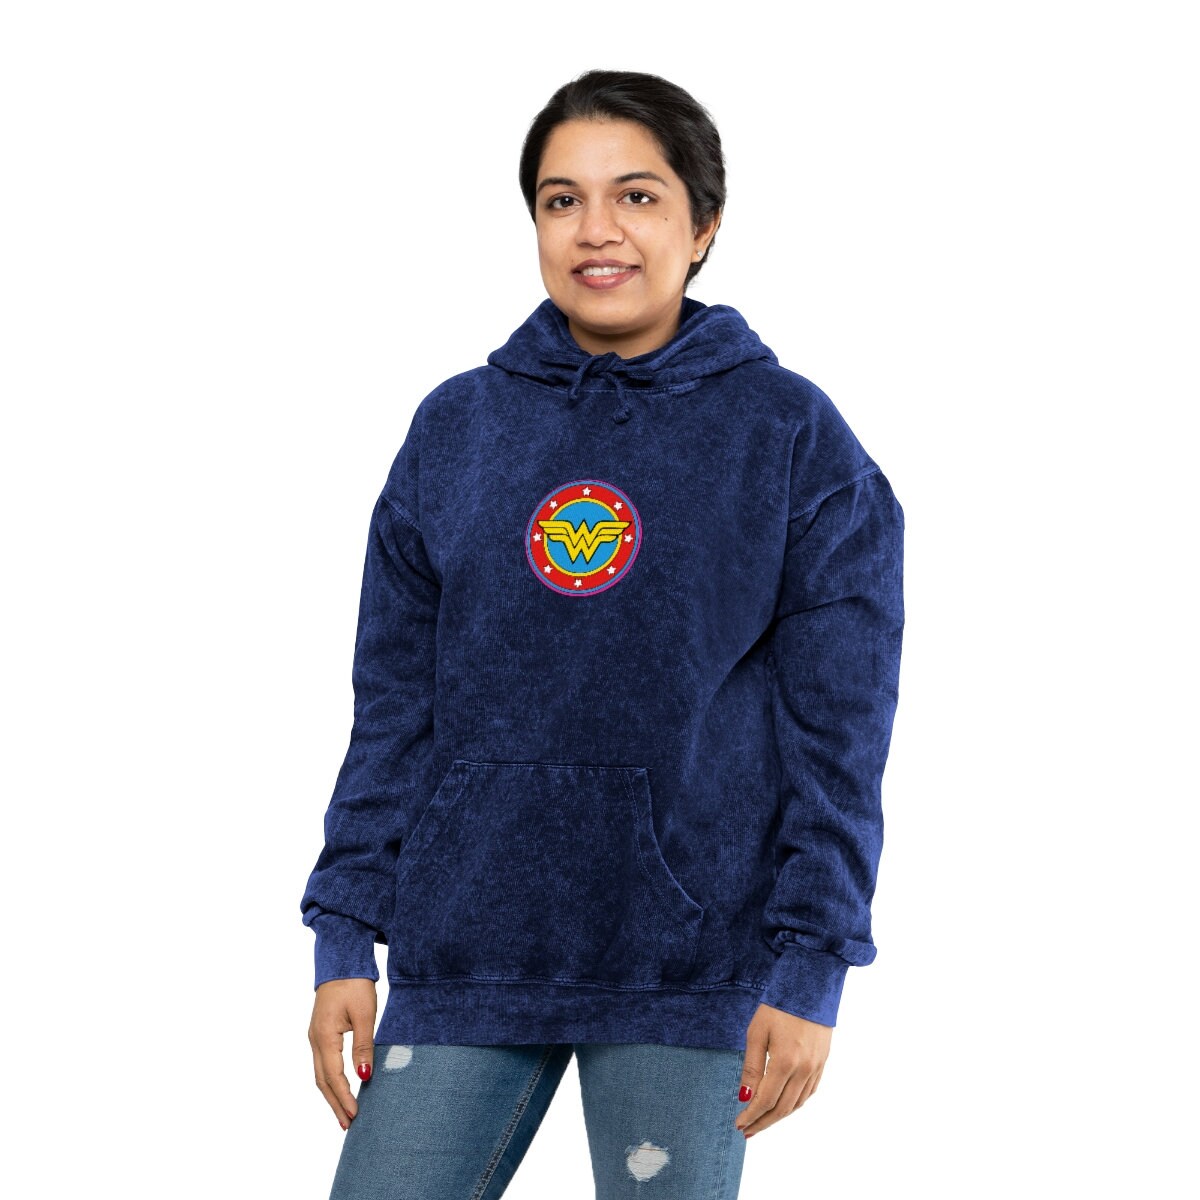 TSMS Classic Unisex Mineral Wash Hoodie Kleding Gender-neutrale kleding volwassenen Hoodies & Sweatshirts Hoodies 